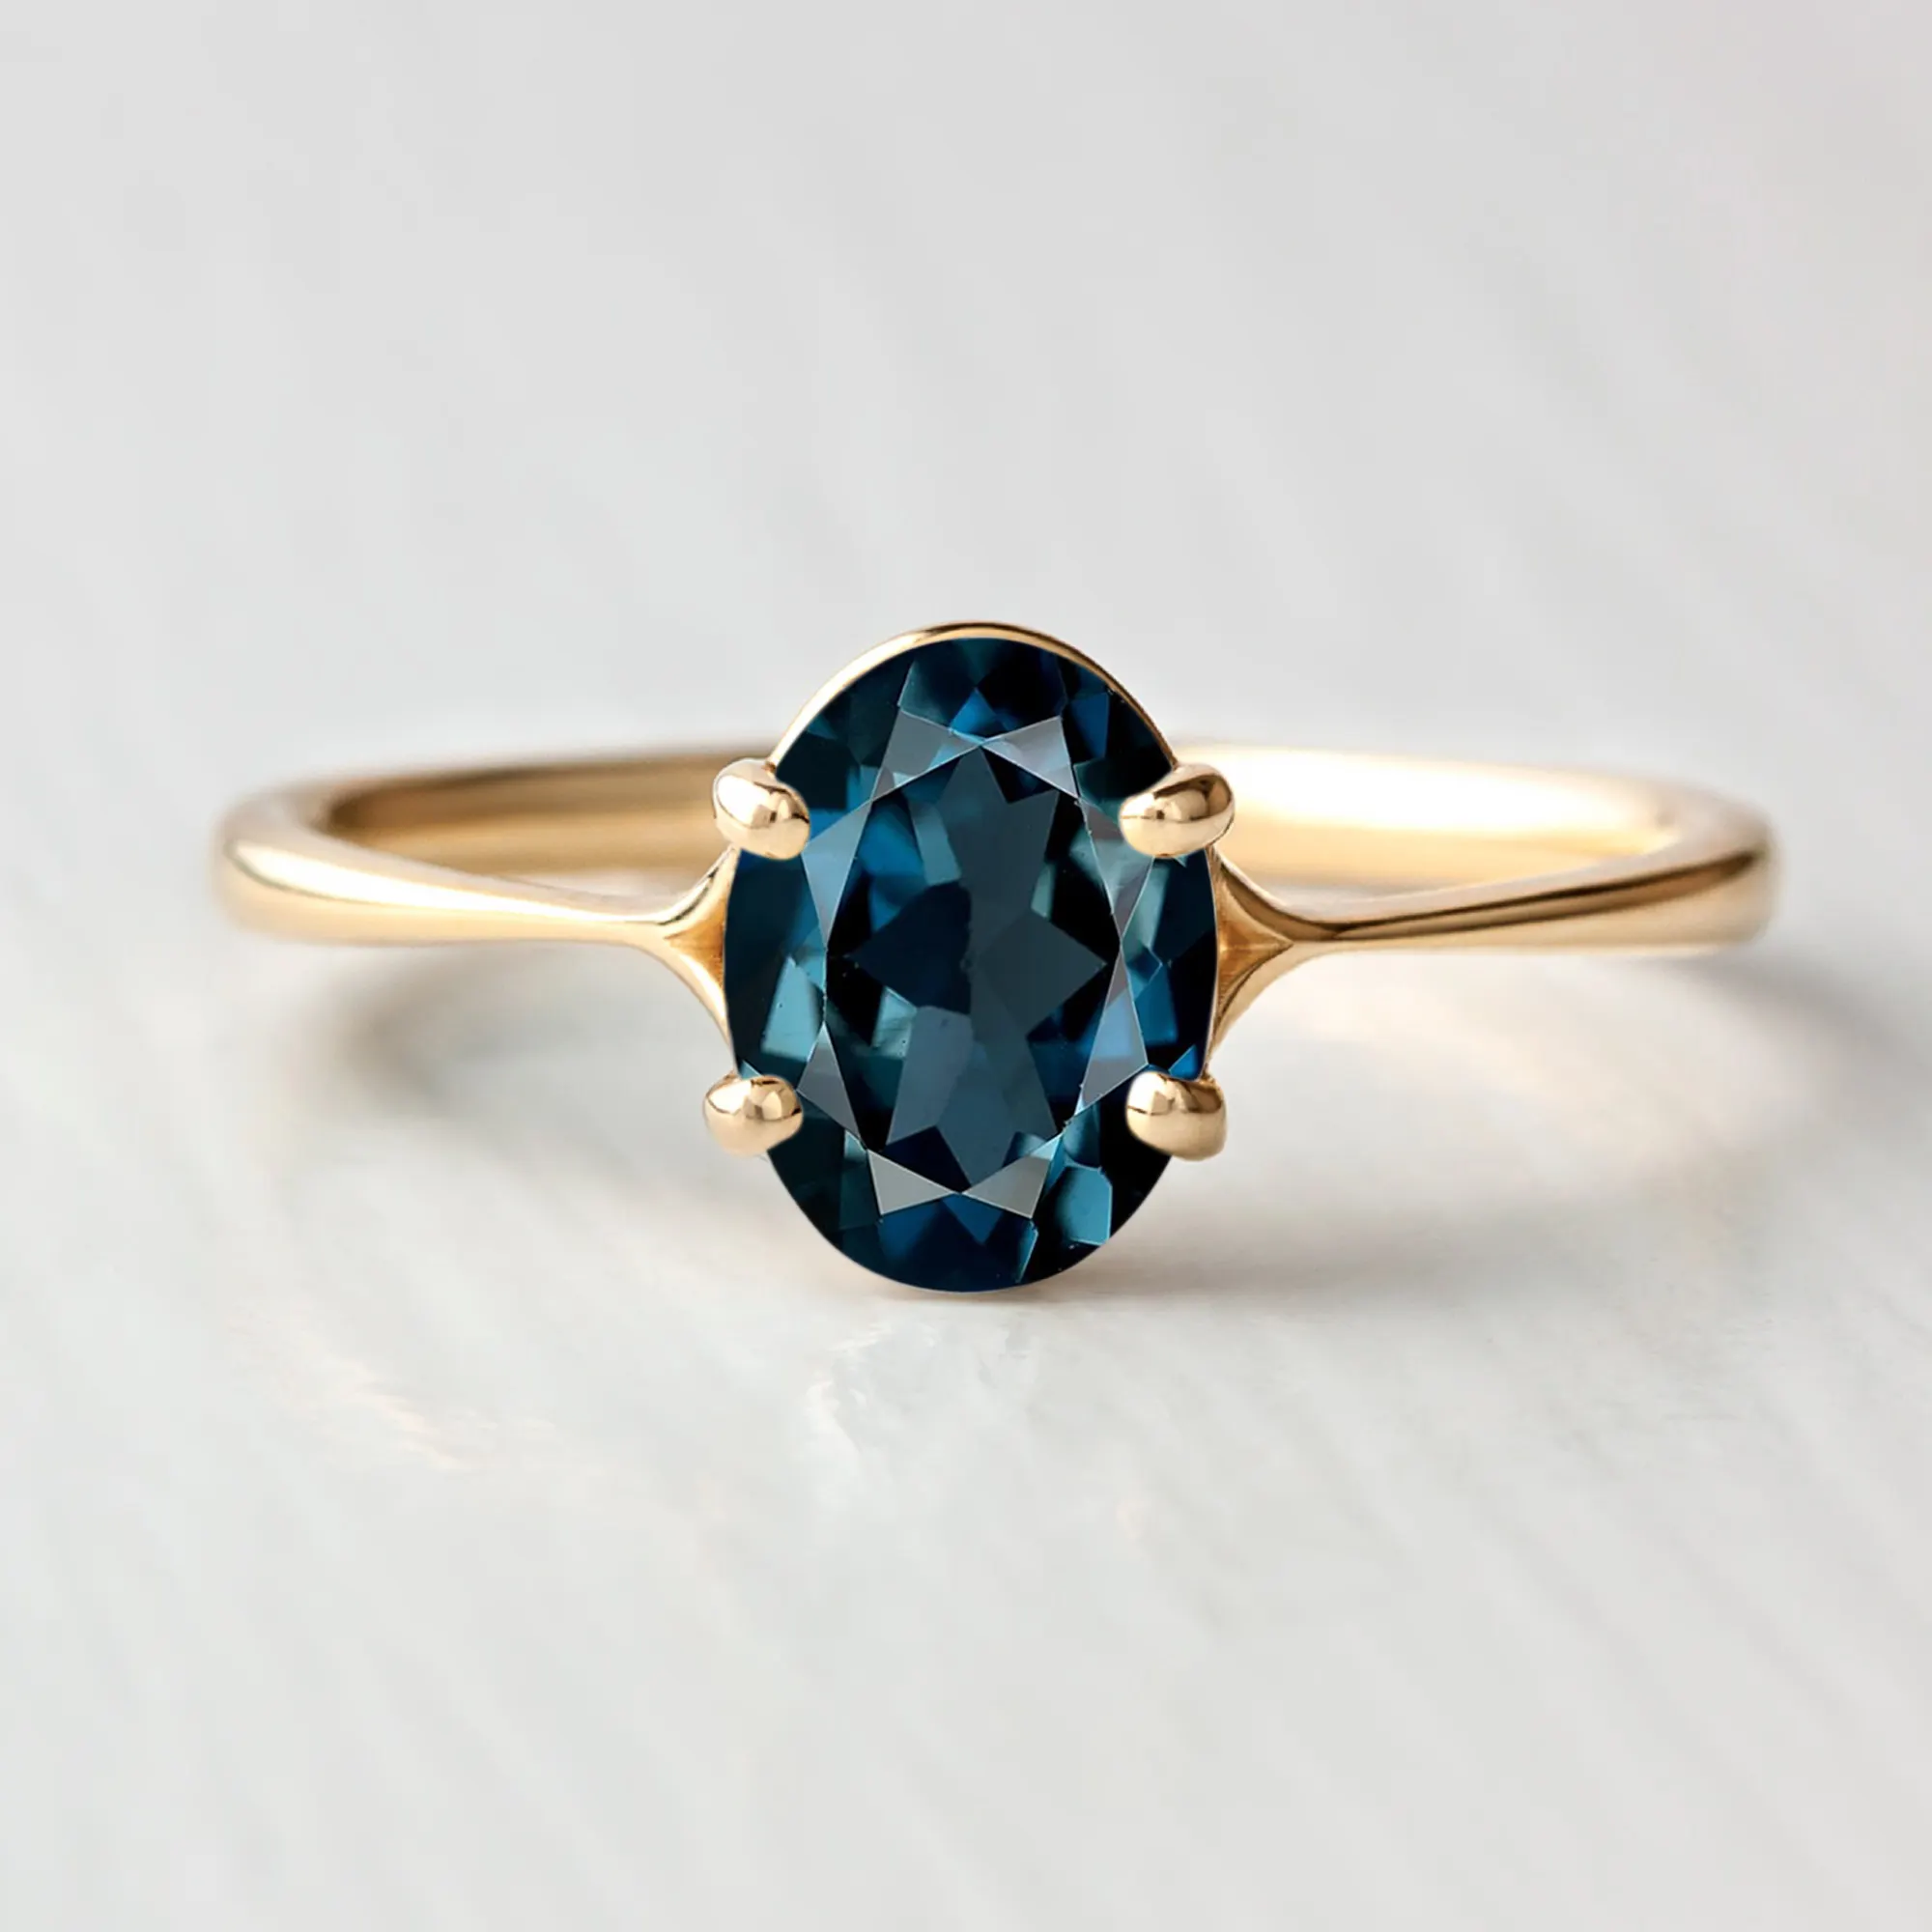 Cincin Topaz biru Oval London alami perhiasan halus desain terbaru 18K 14K emas murni hadiah klasik cincin modis kualitas terbaik untuk wanita